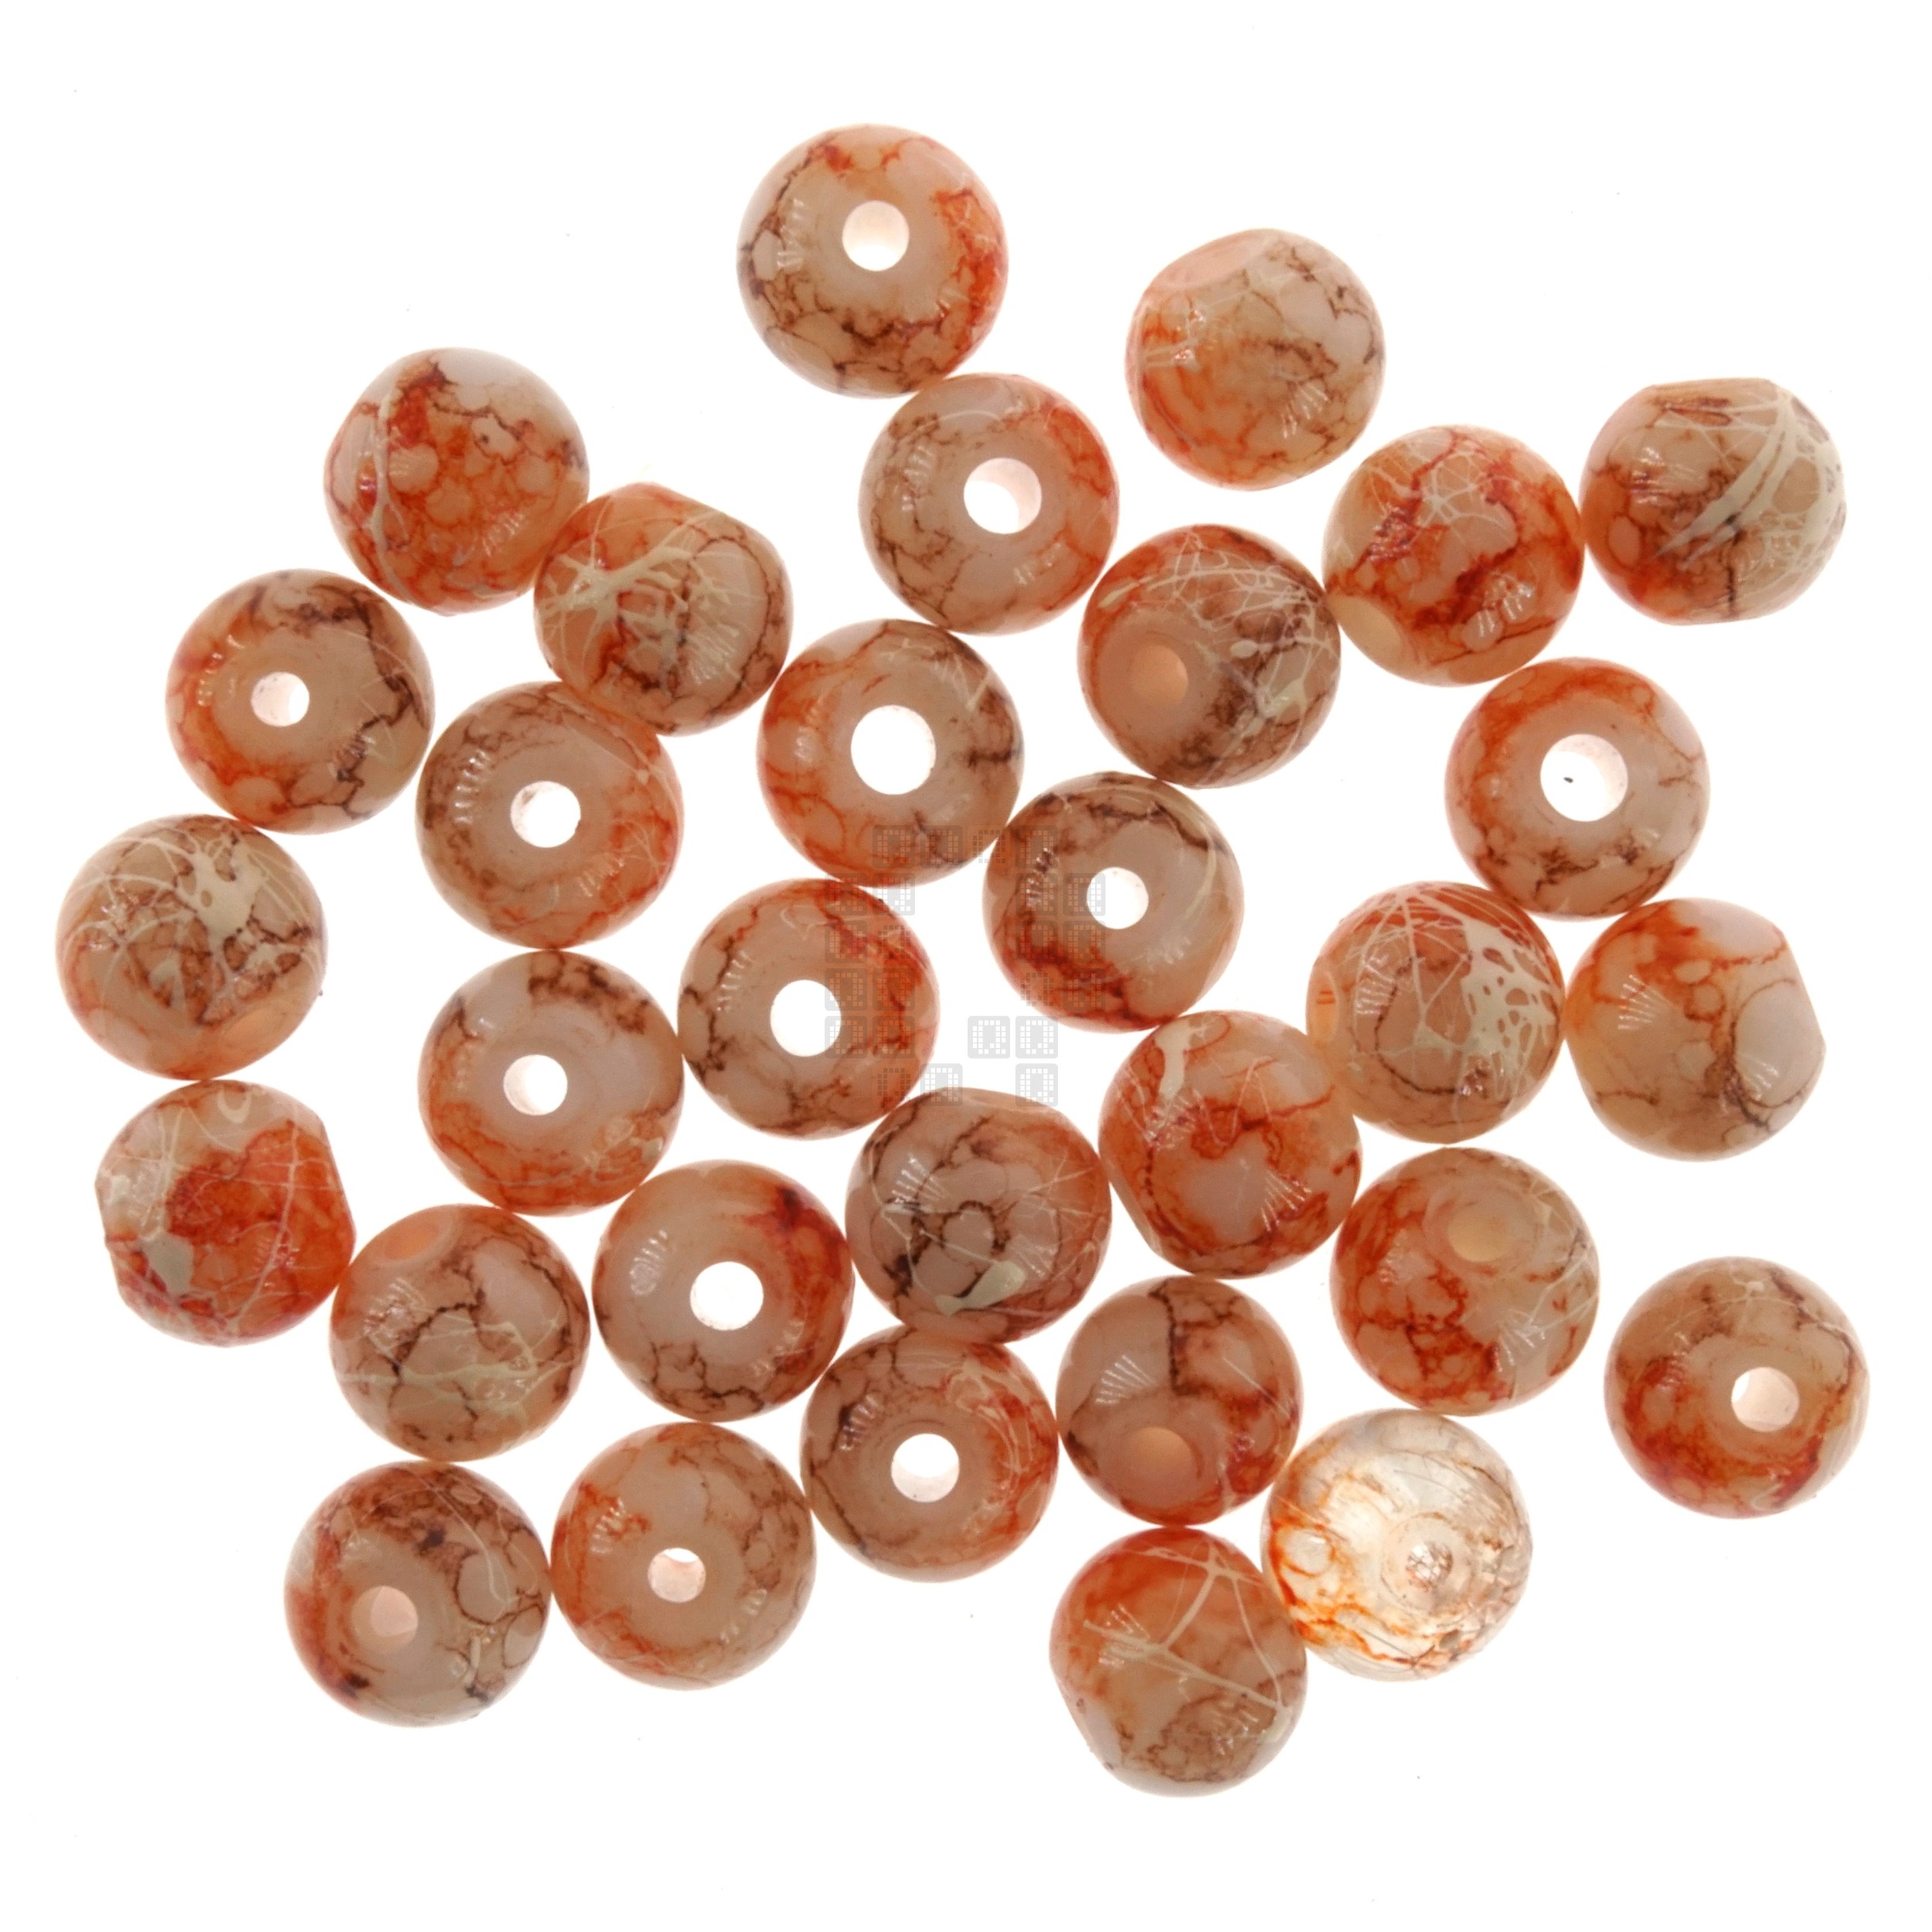 Butterscotch Caramel 8mm Loose Glass Beads, 30 Pieces